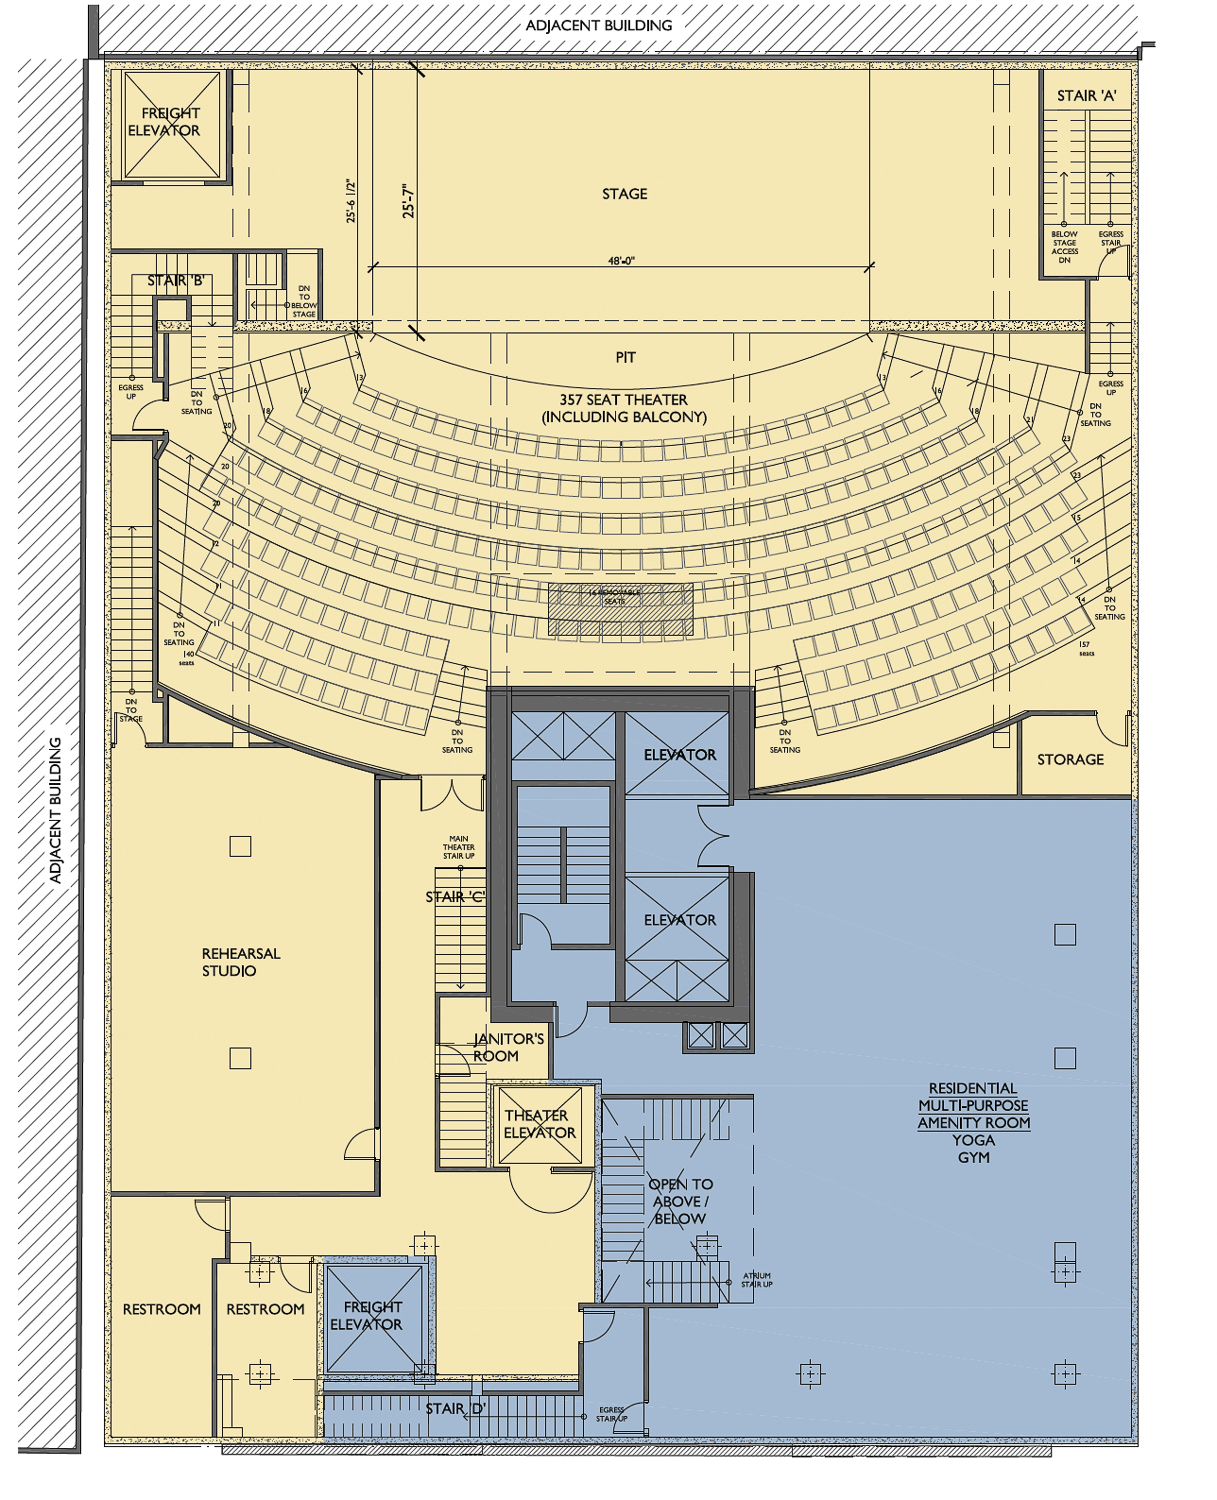 2113 Kittredge Street basement-level floor plan, illustration by Studio KDA